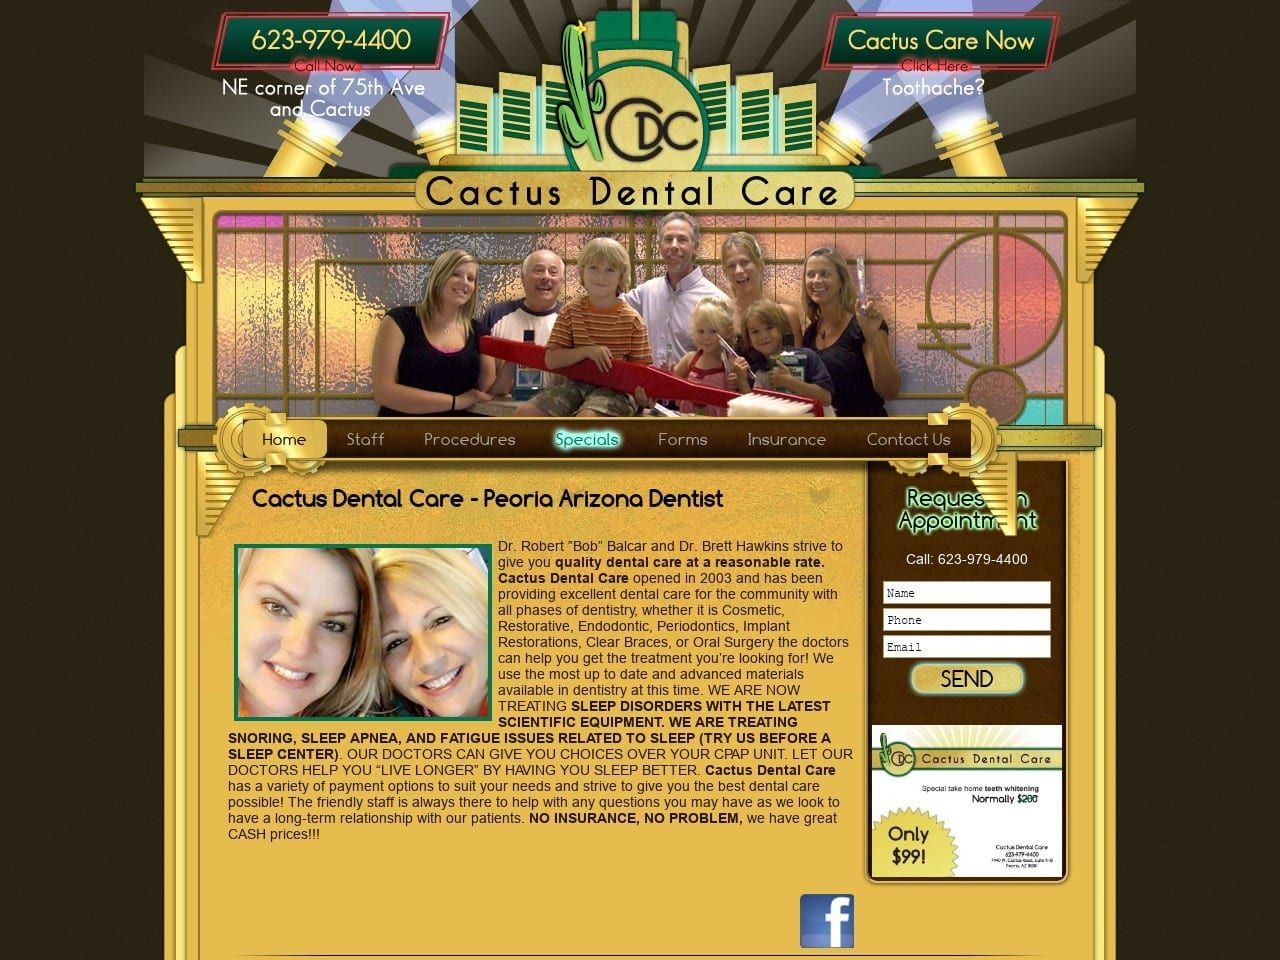 Cactus Dental Care LLC Website Screenshot from cactusdentalcare.com